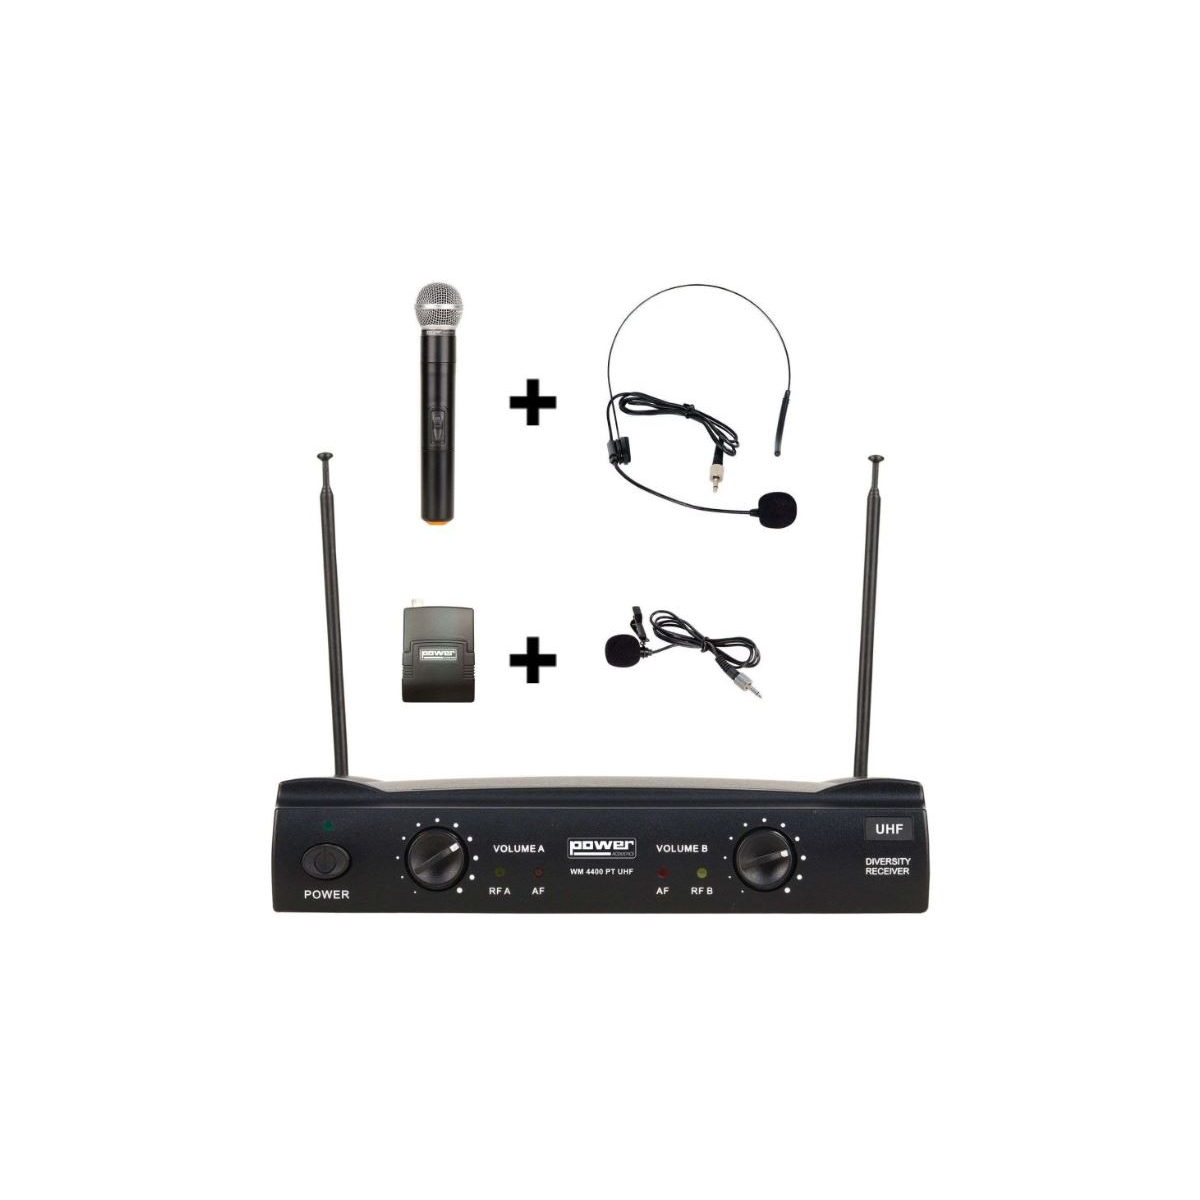 Micros chant sans fil - Power Acoustics - Sonorisation - WM 4400 PT UHF GR5